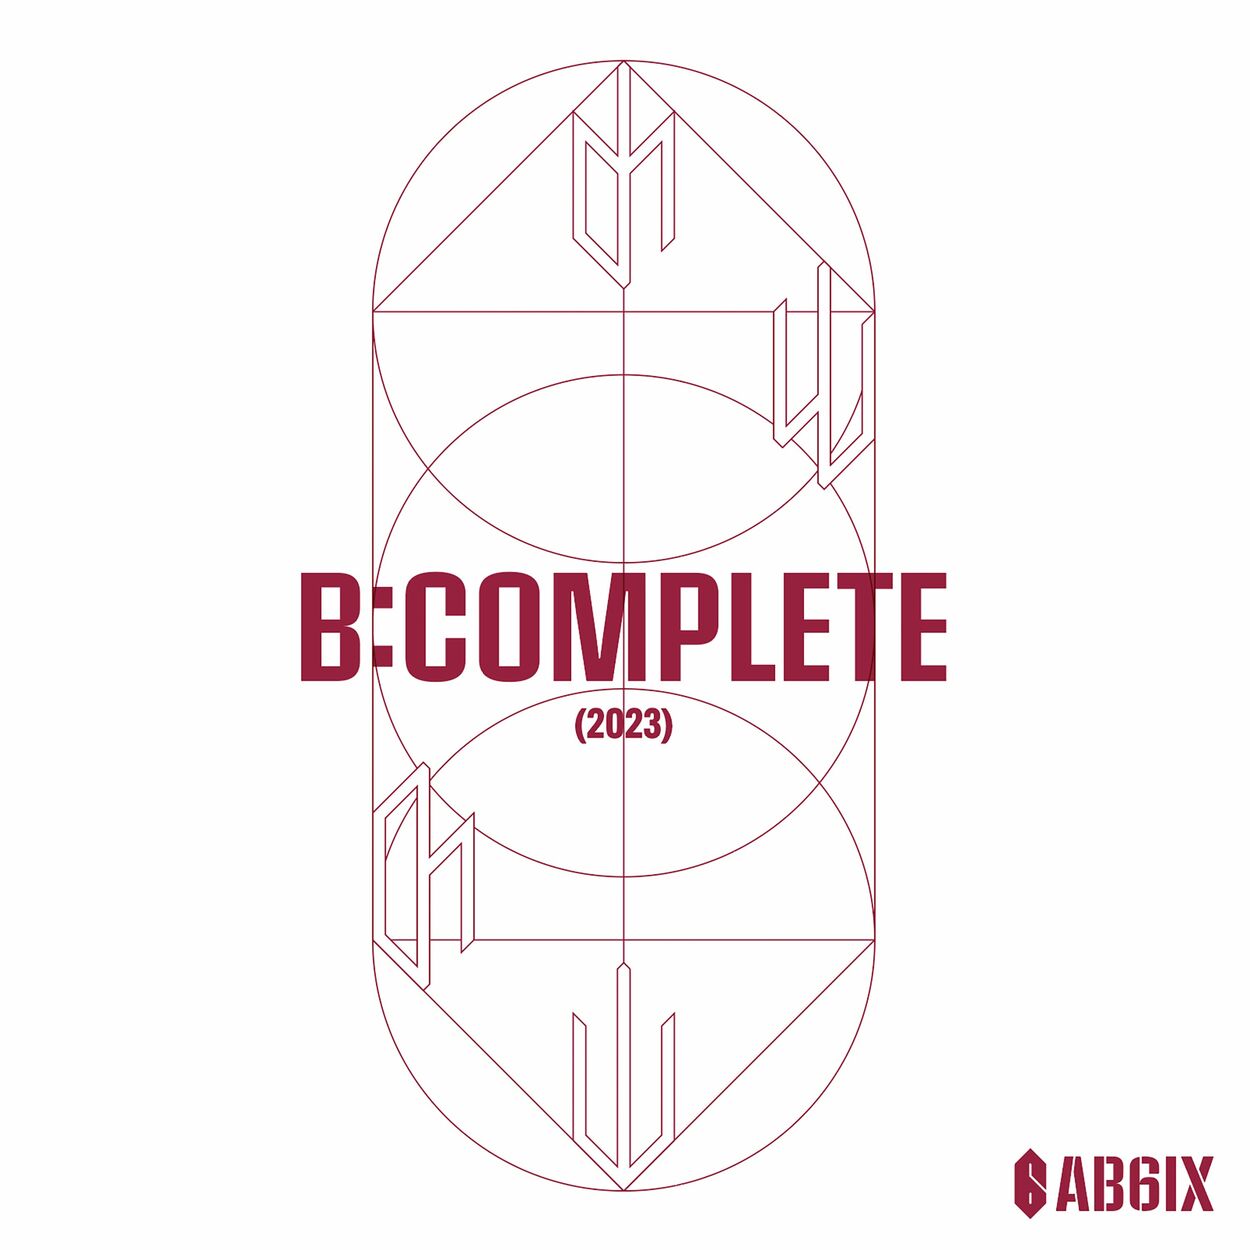 AB6IX – B:COMPLETE (2023) – EP